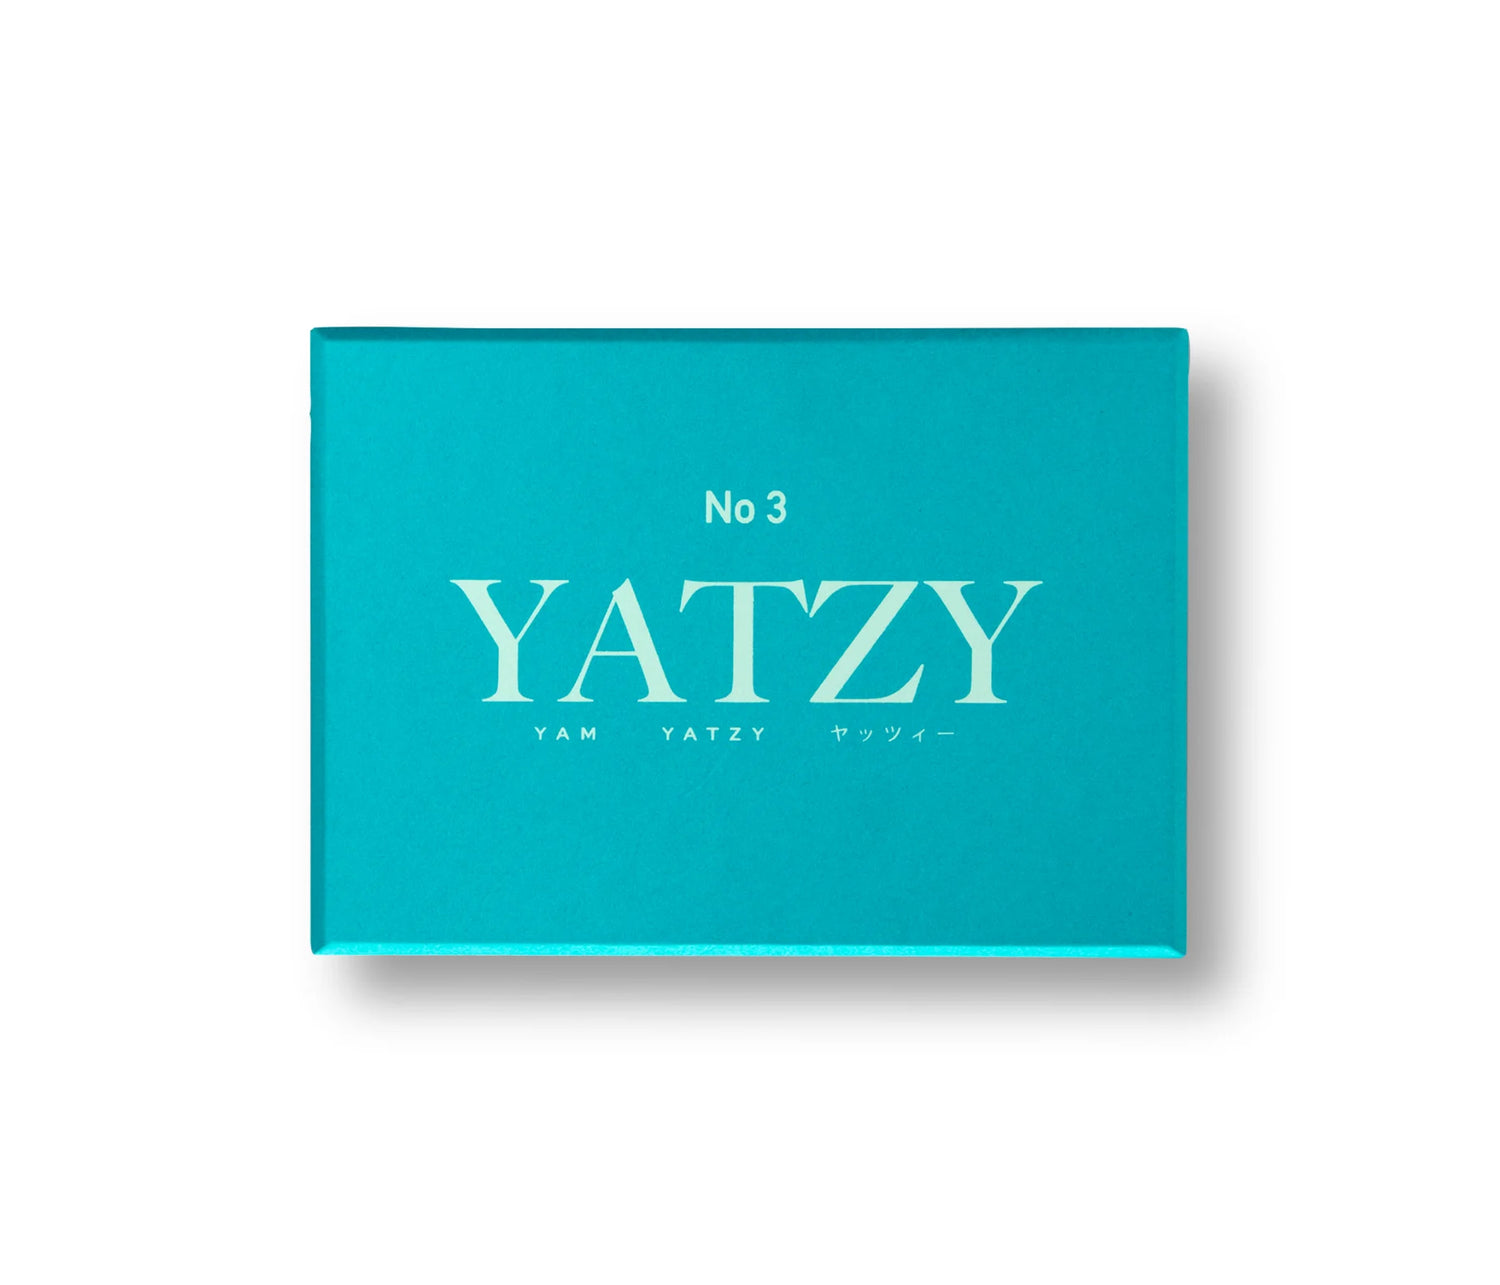 Yatzy, classic